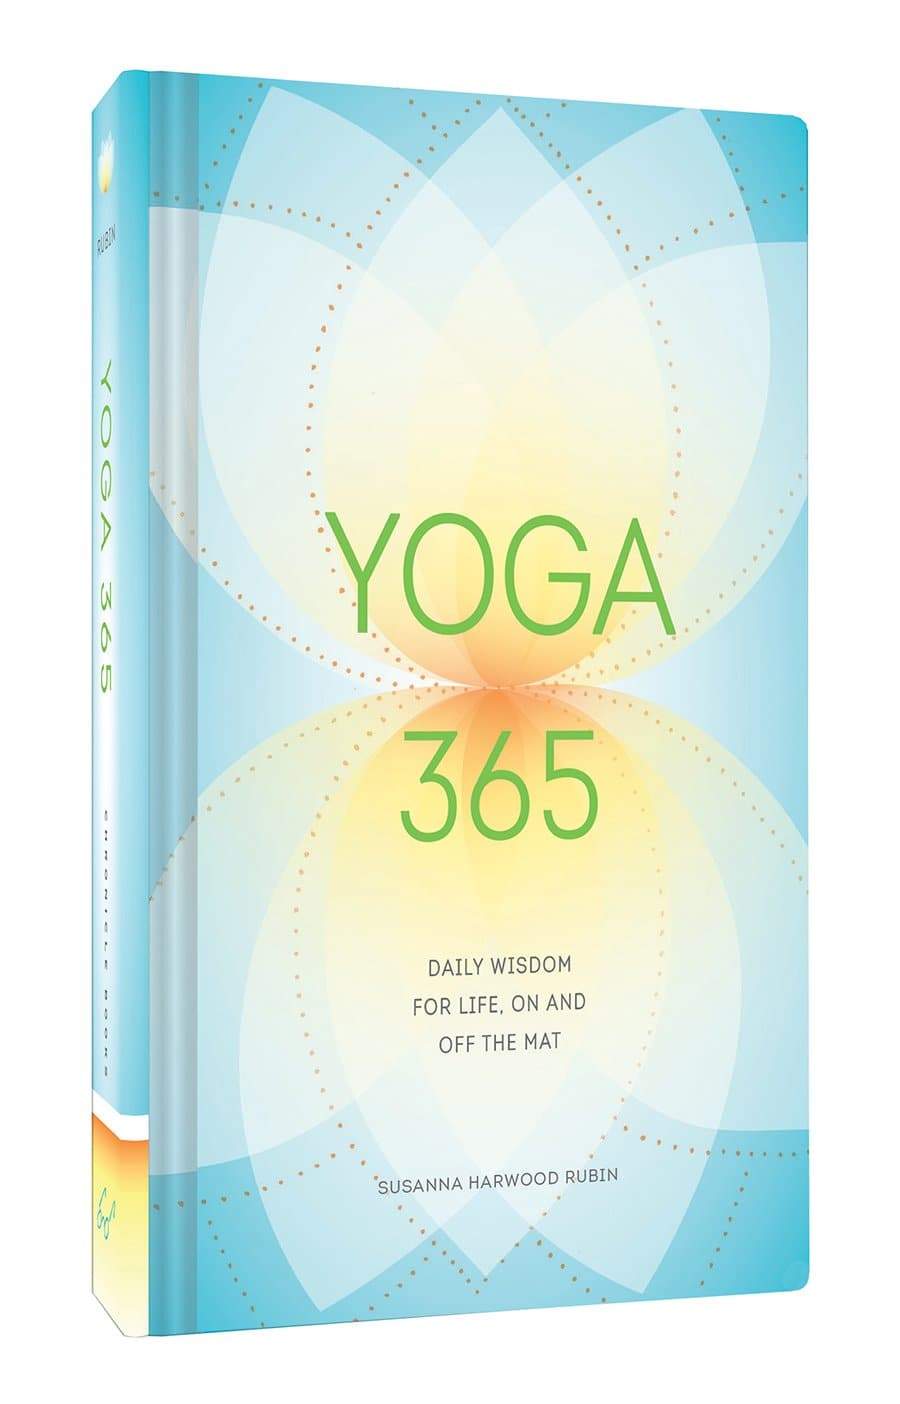 Yoga 365 By Susanna hardwood Rubin